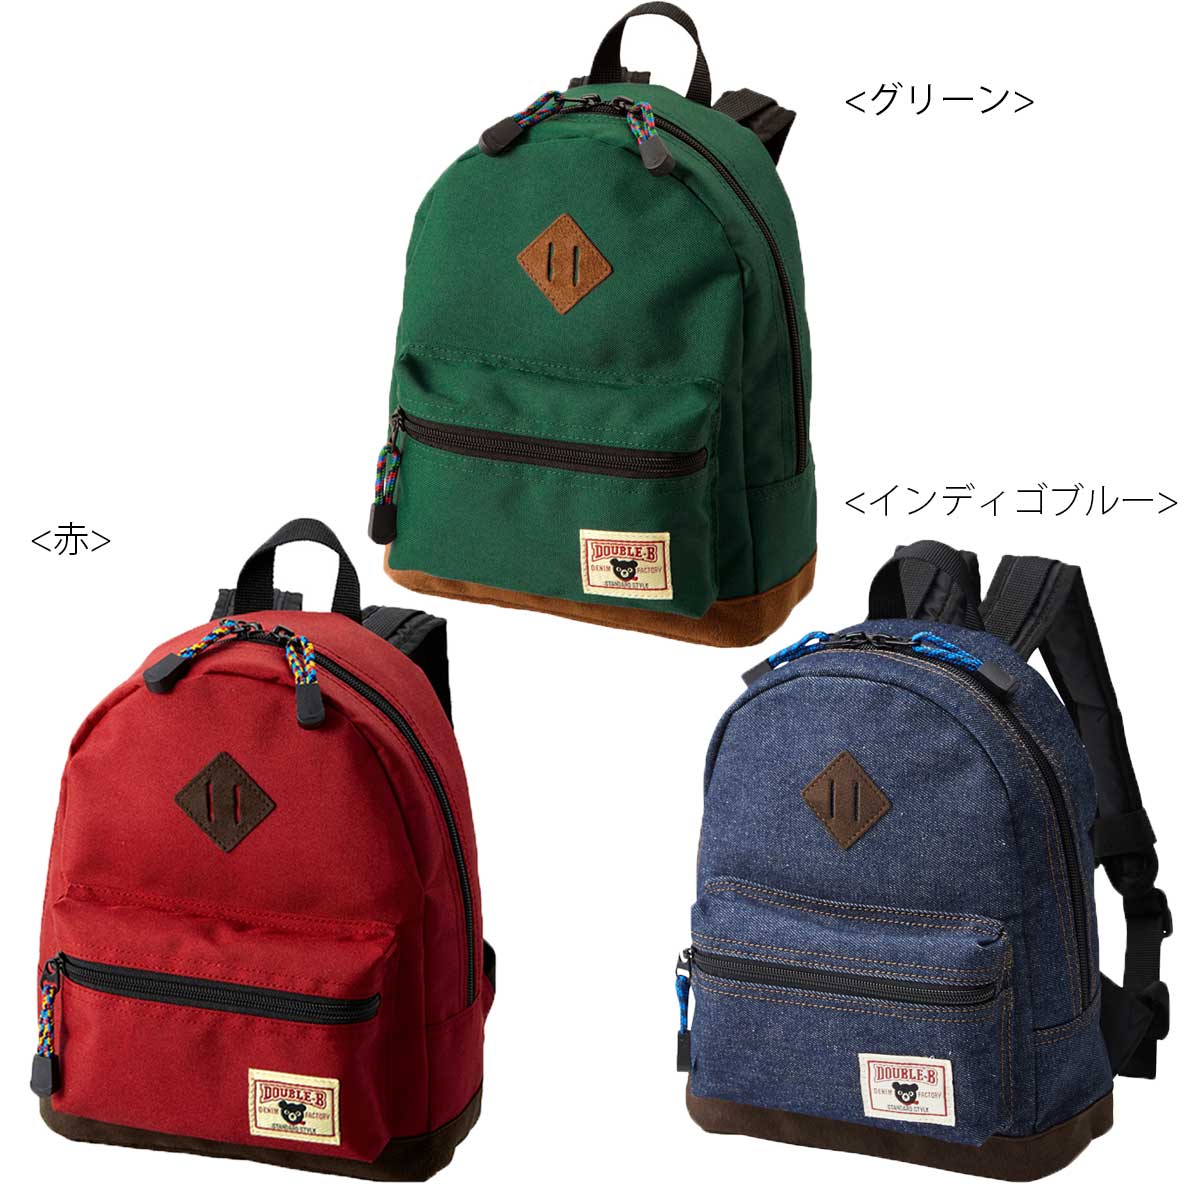 日本Double B/兒童休閒背包/S尺寸/60-8221-973。3色。(6914)日本必買 日本樂天代購。滿額免運